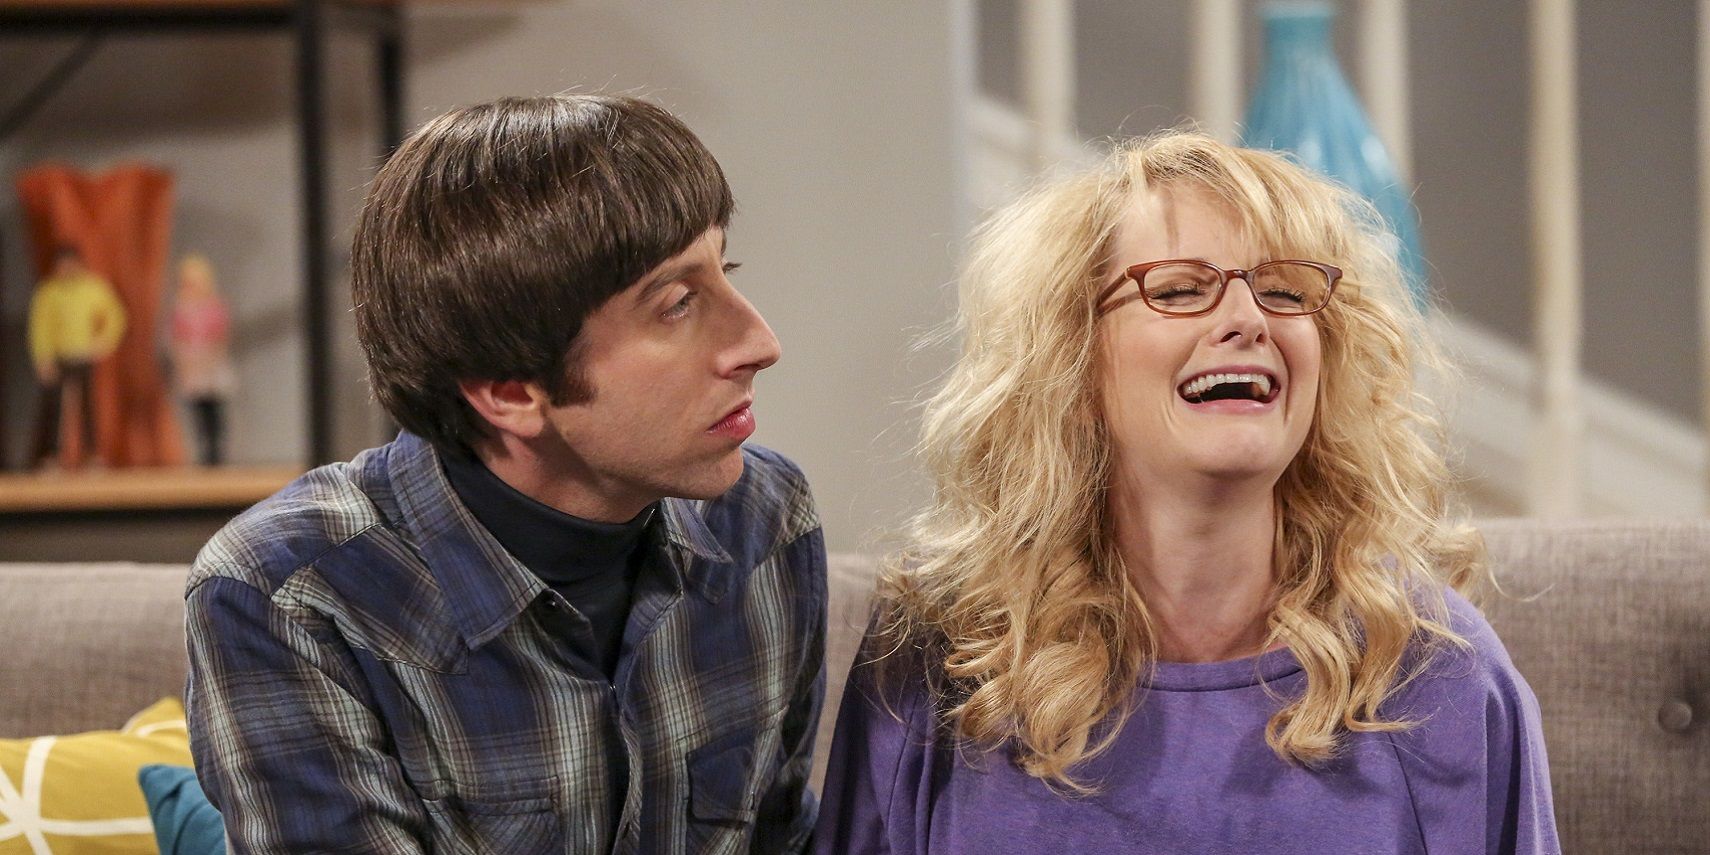 La audiencia no reaccionó”: cómo una escena final de The Big Bang Theory quedó decepcionada